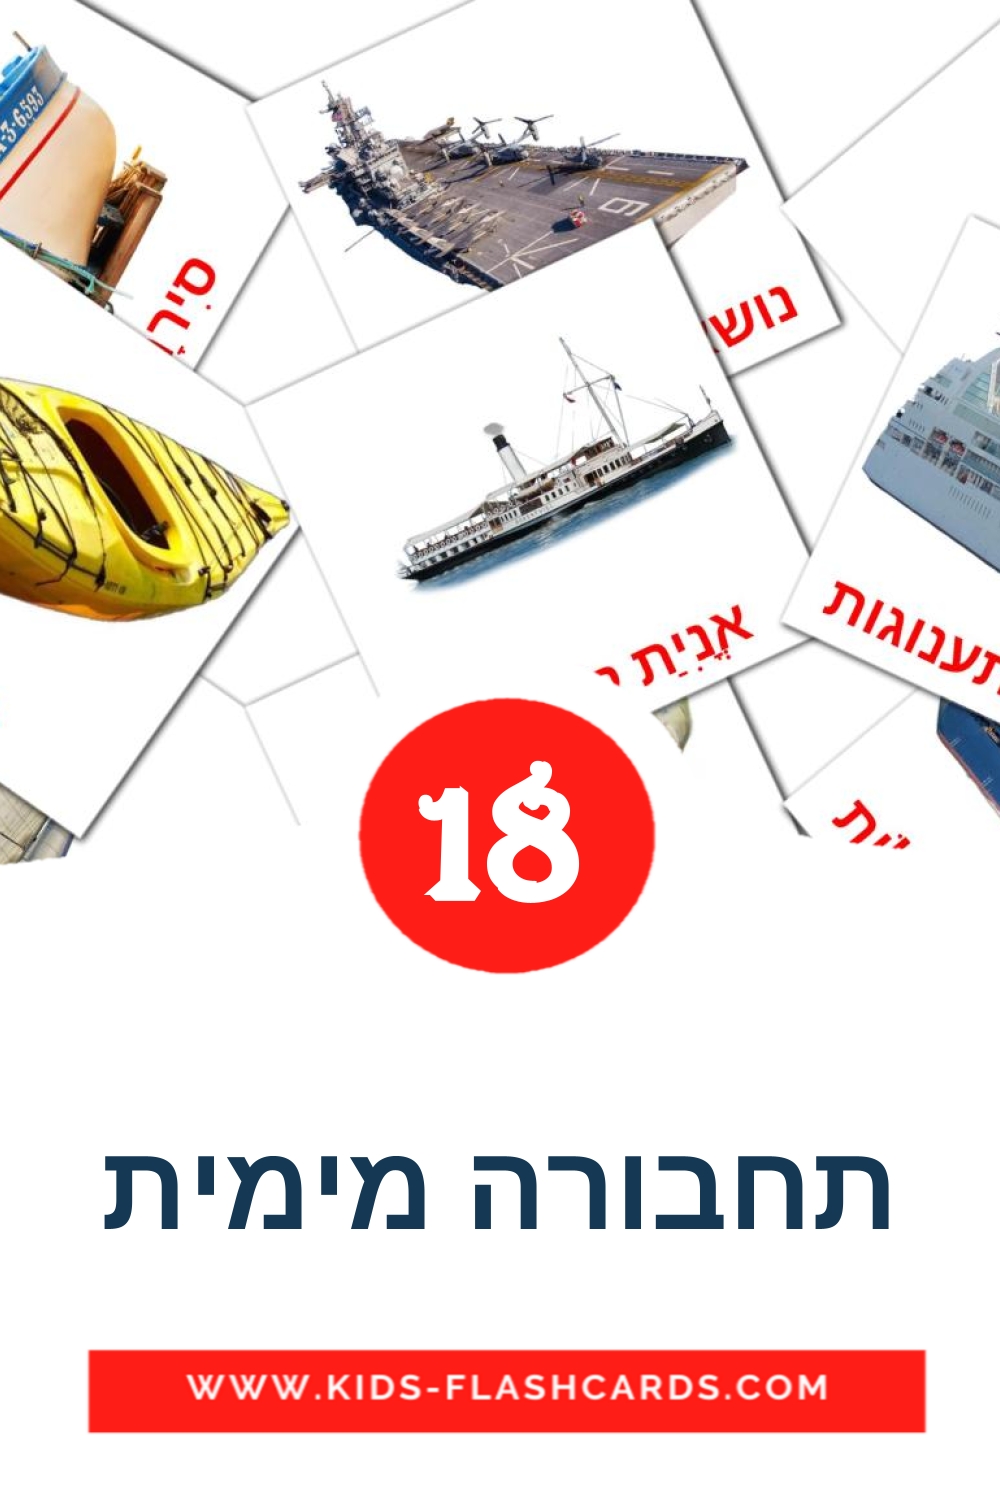 18 Cartões com Imagens de תחבורה מימית para Jardim de Infância em hebraico